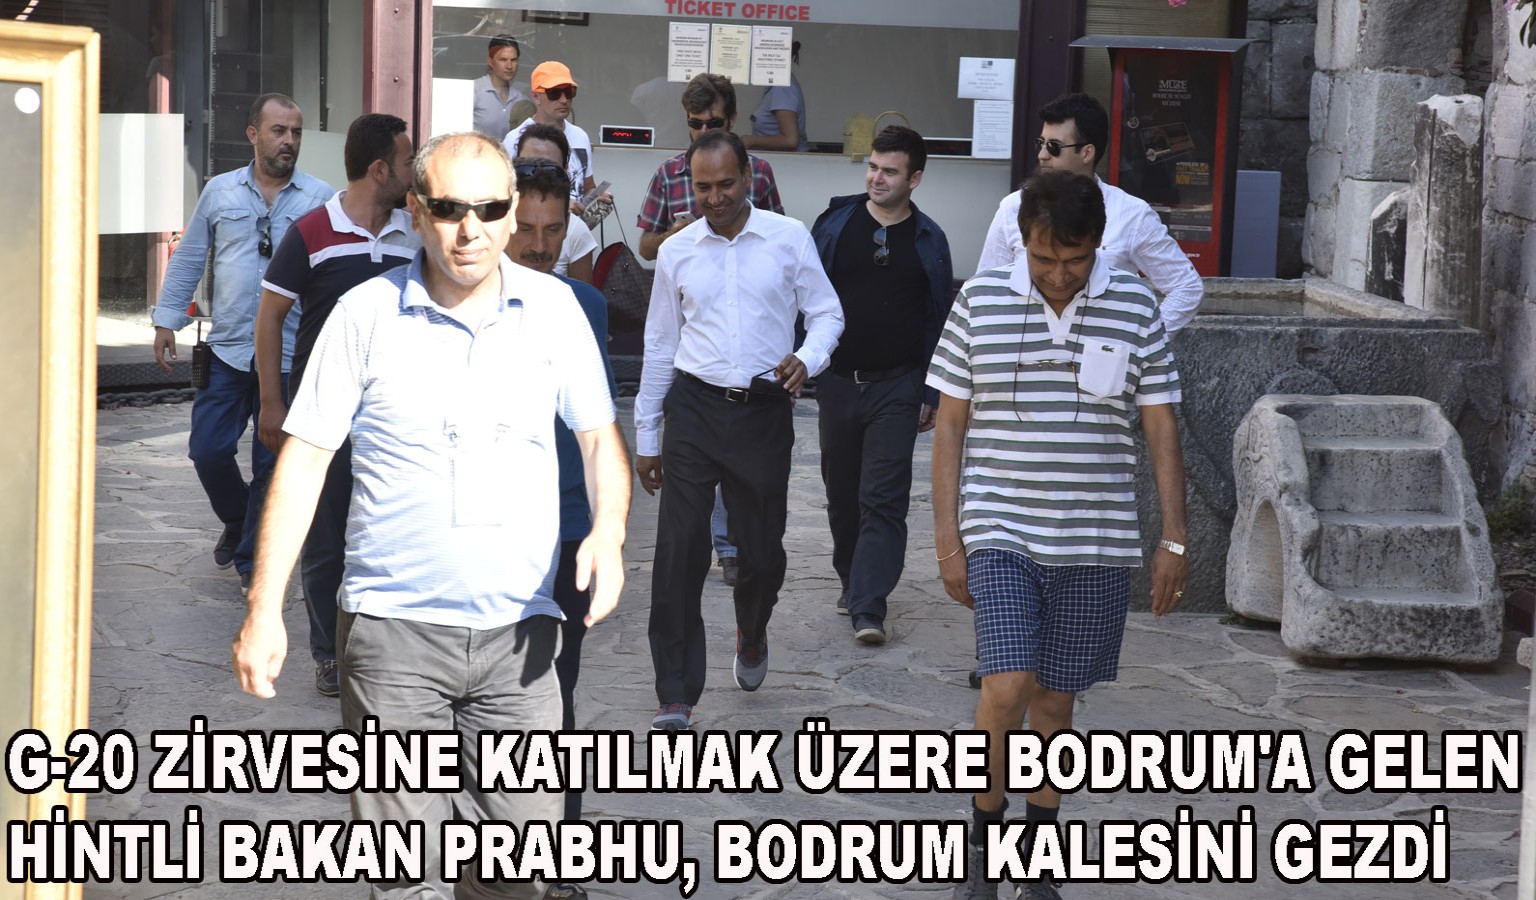 HİNTLİ BAKAN BODRUM'DA YORGUNLUK ATIYOR!..